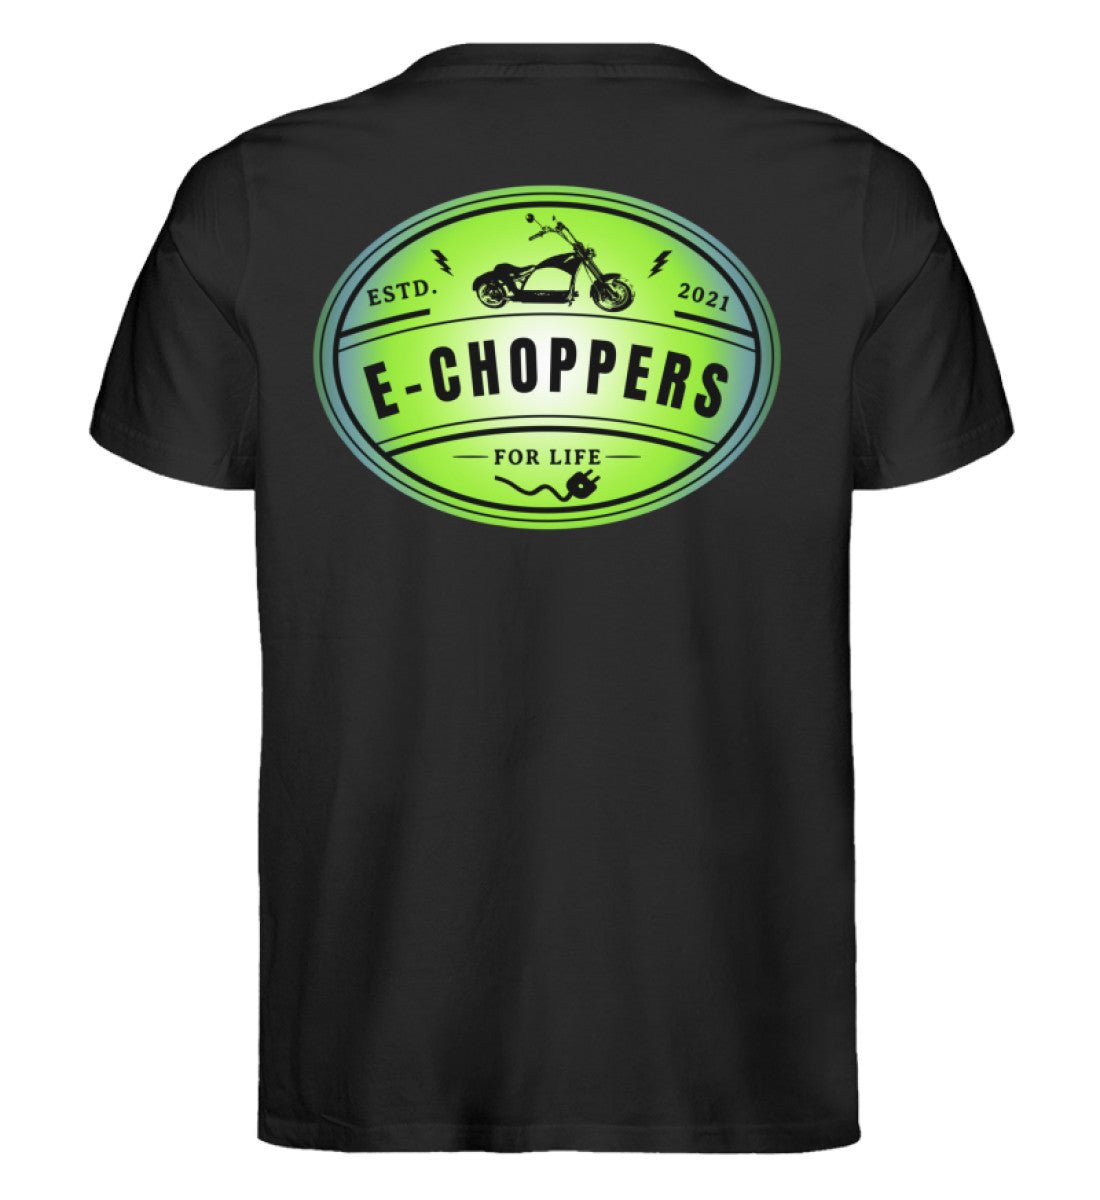 Zeige deine Leidenschaft: Das E-Chopper Premium Bio T-Shirt